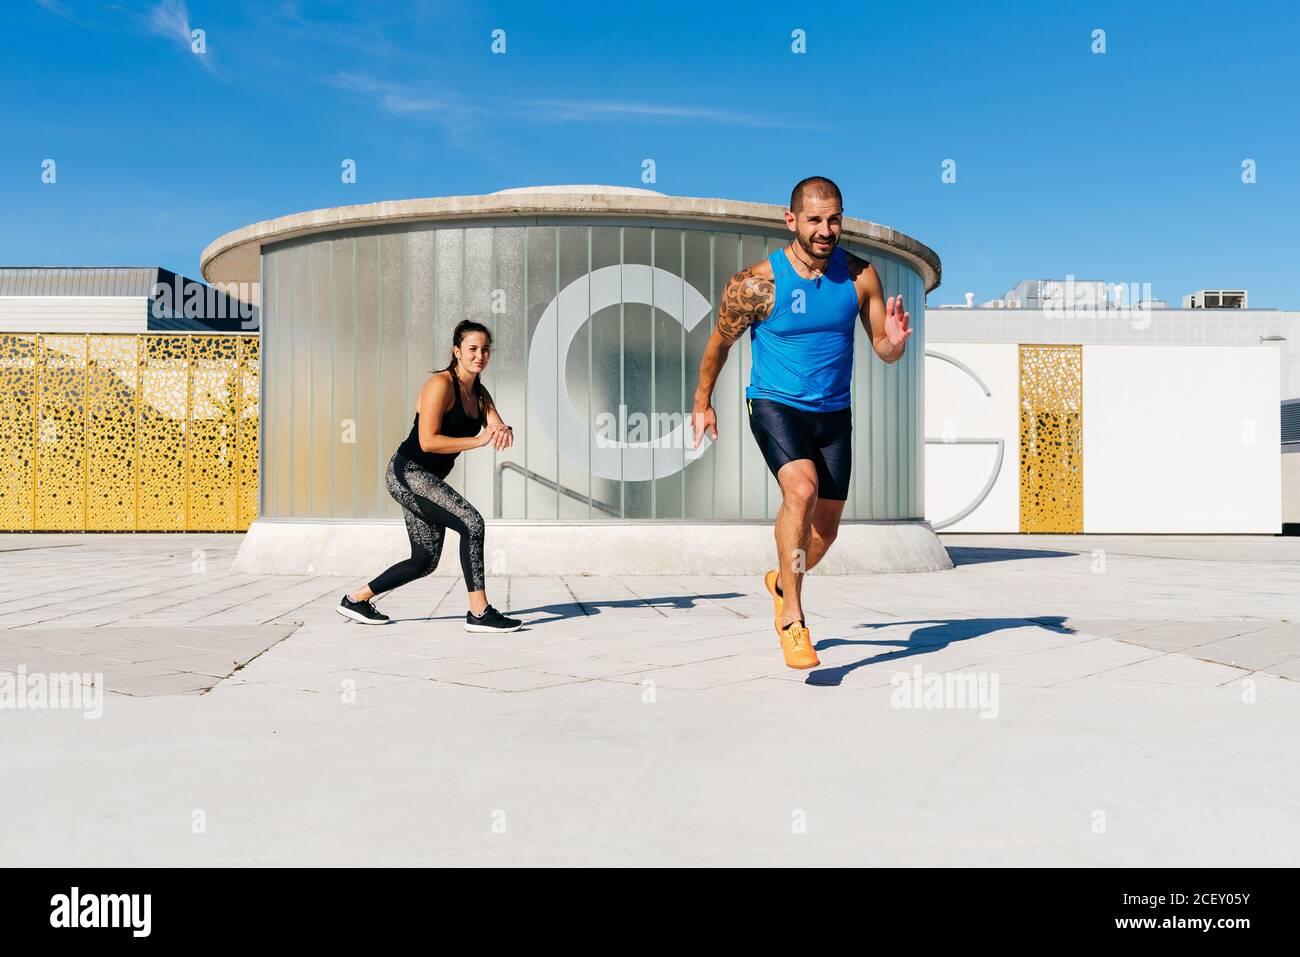 L'atleta maschile focalizzato inizia a correre velocemente durante l'allenamento con la donna pullman personale su strada lastricata Foto Stock